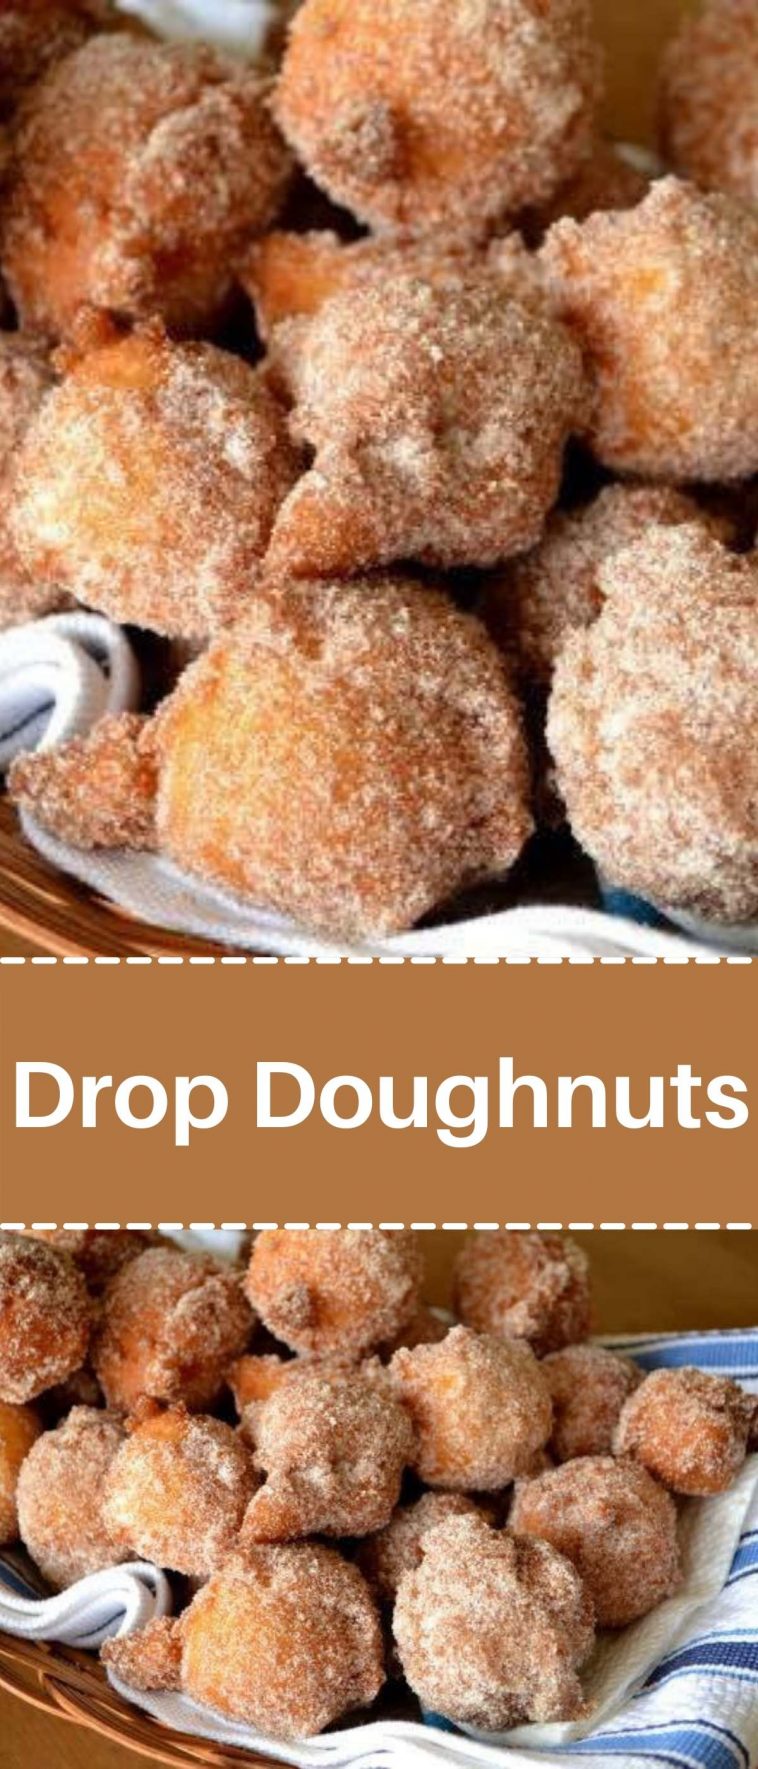 Drop Doughnuts